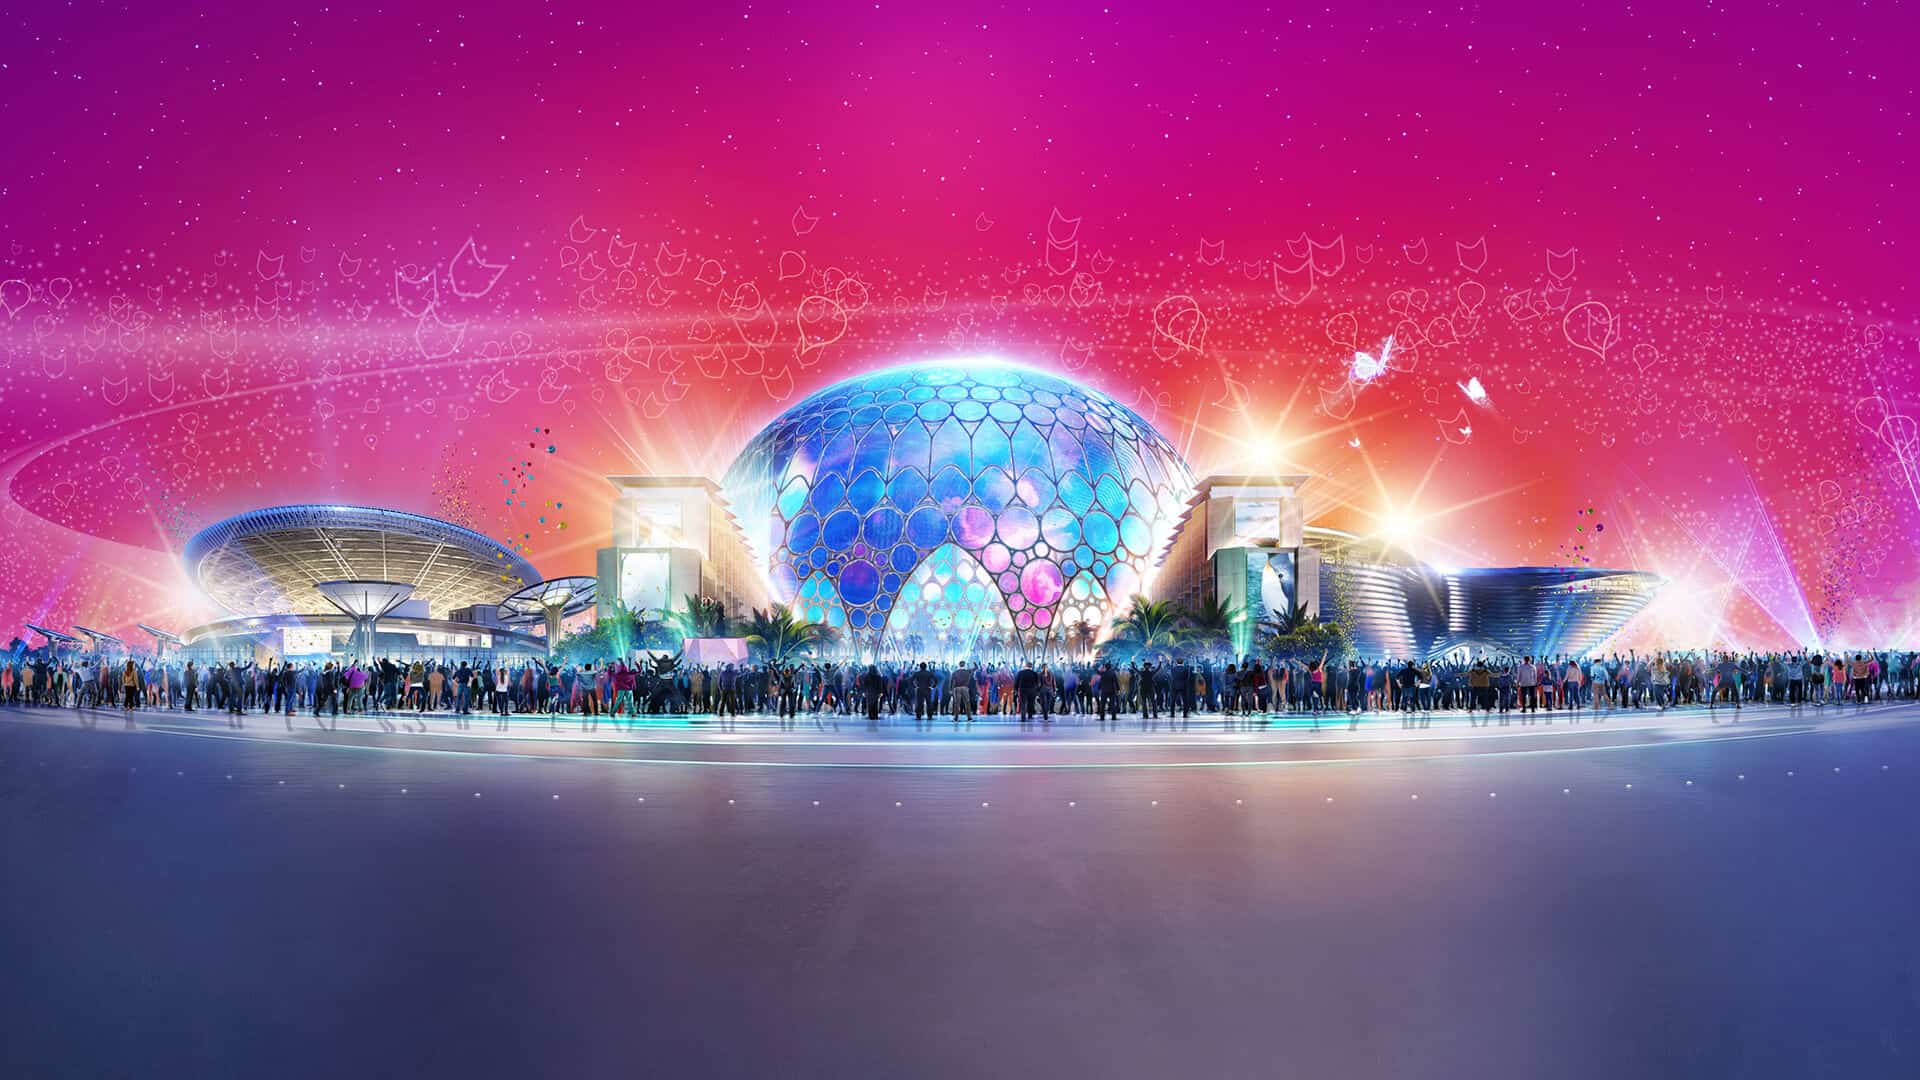 Expo 2020 Dubay